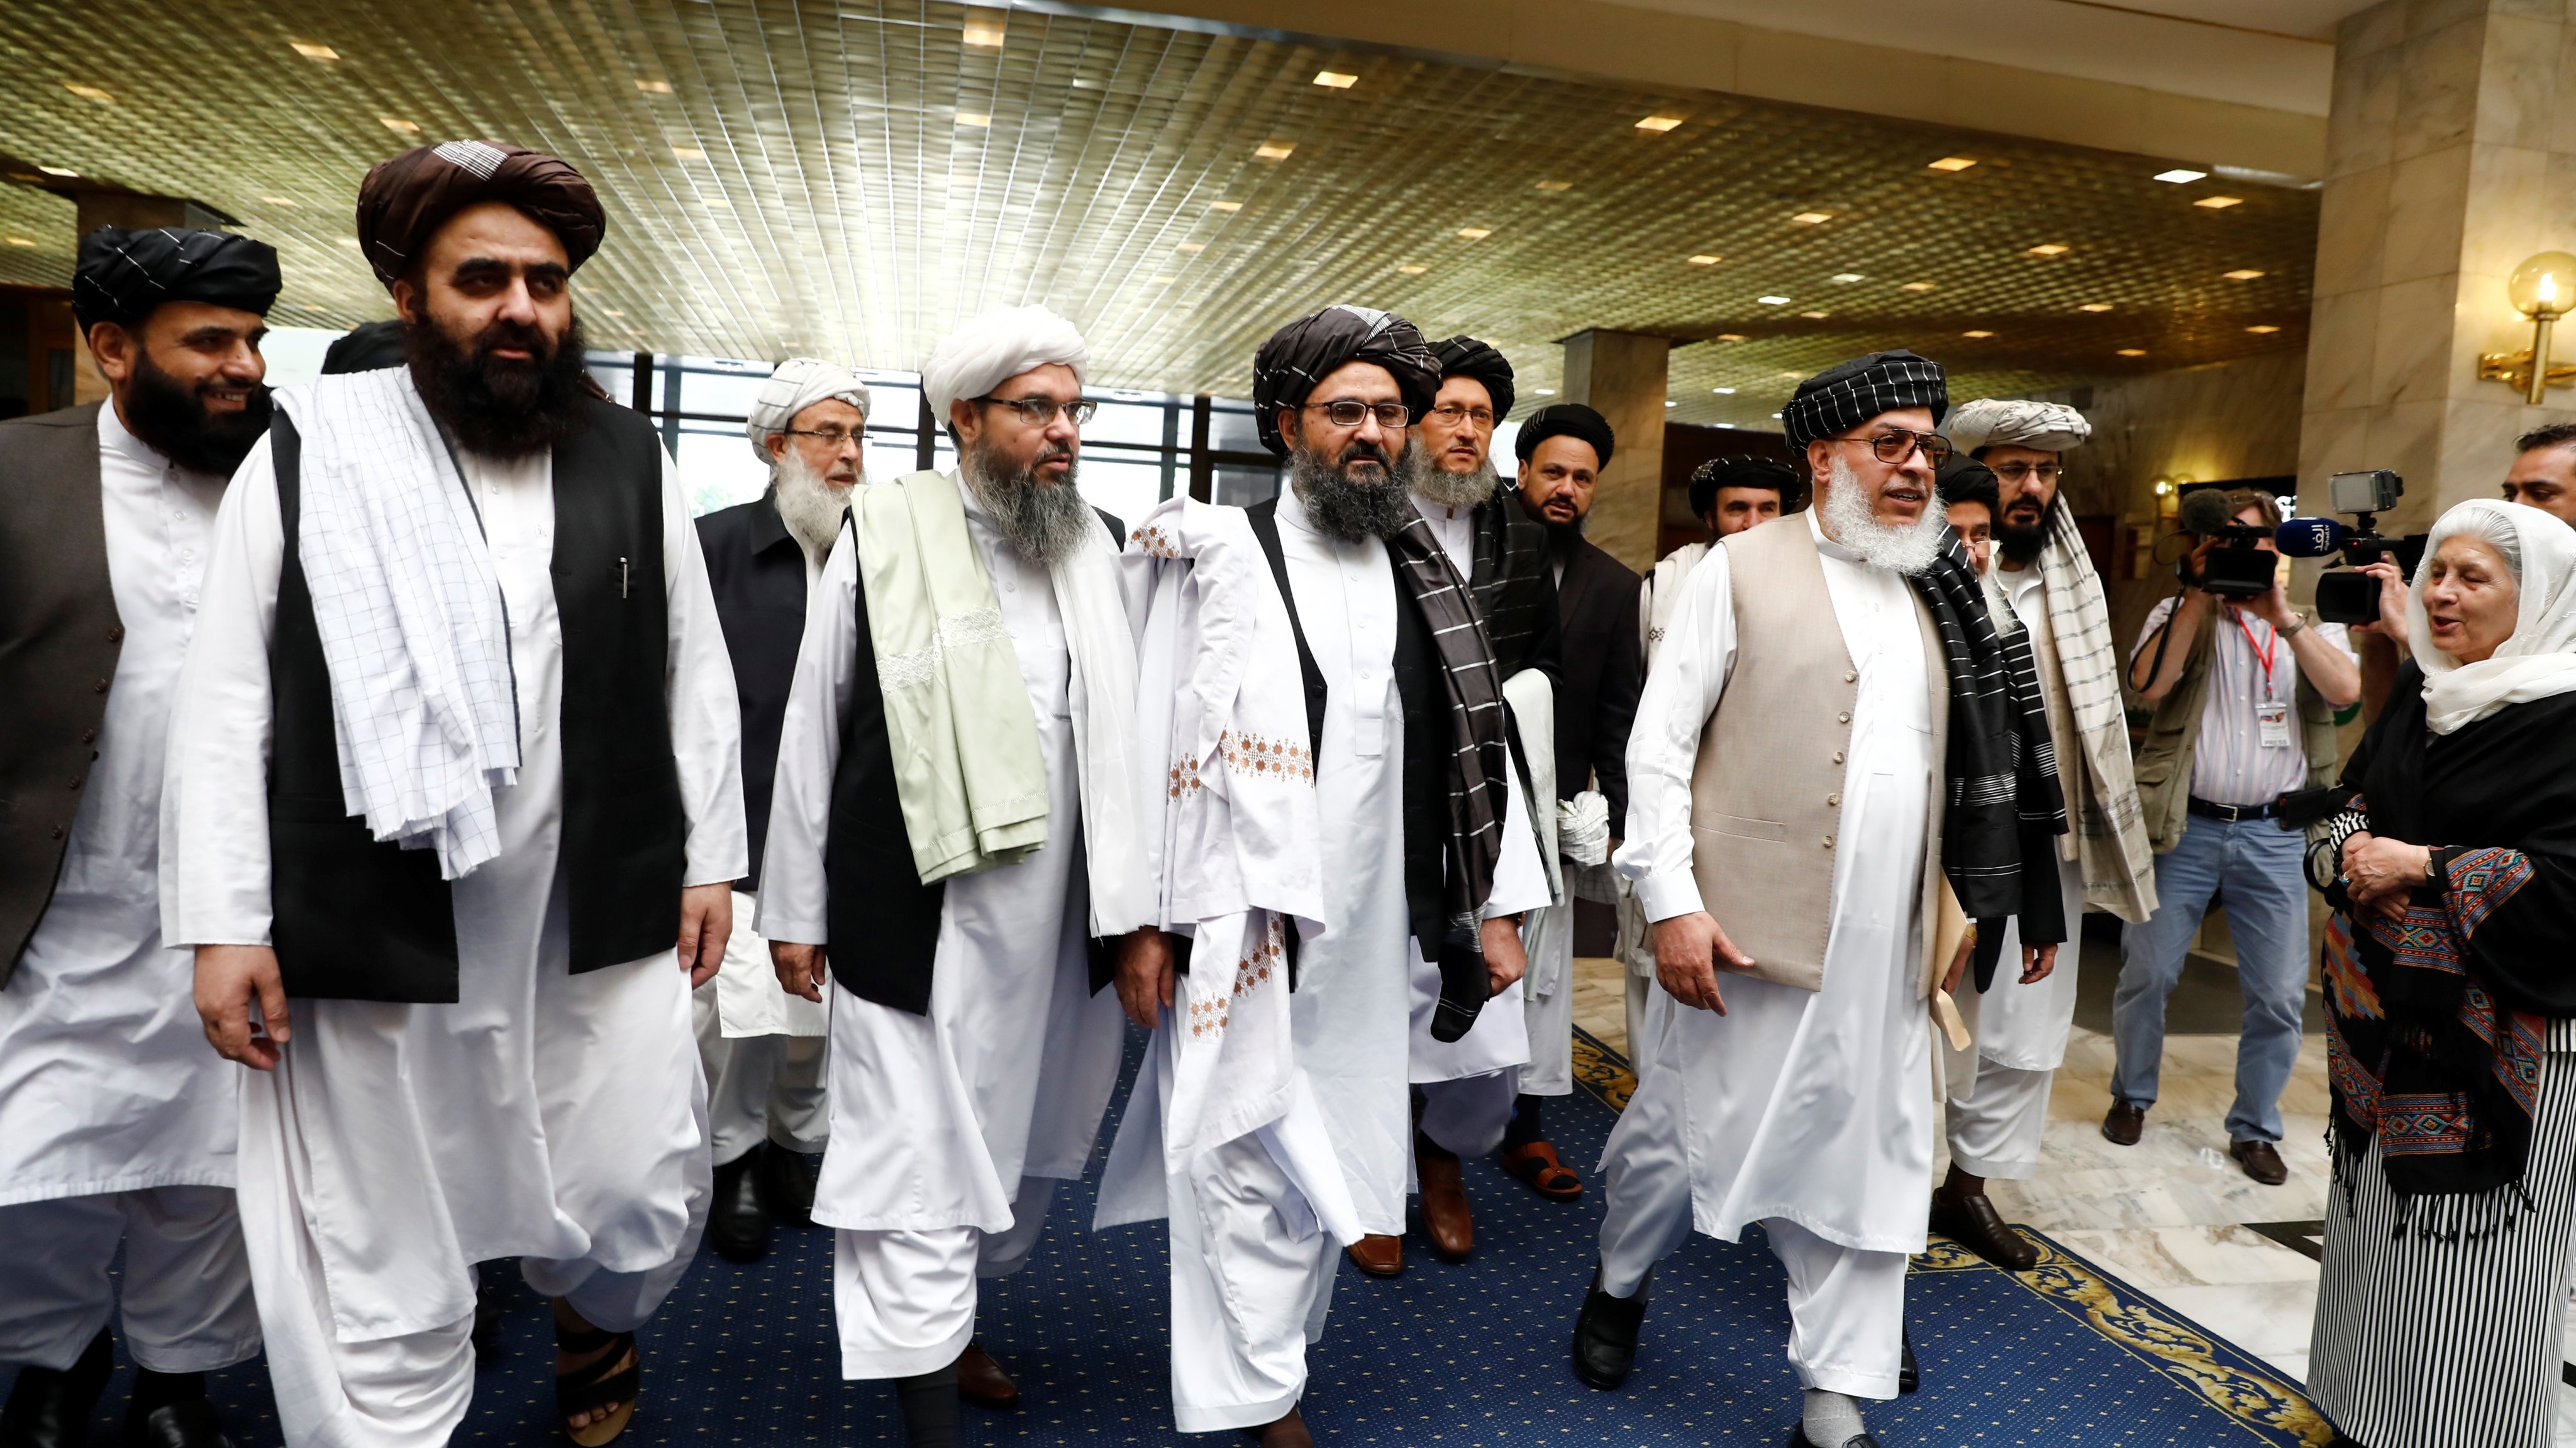 Representantes do governo talibã, liderados por Mullah Abdul Ghani, em conversações com Rússia. Moscovo, 28 de maio de 2021